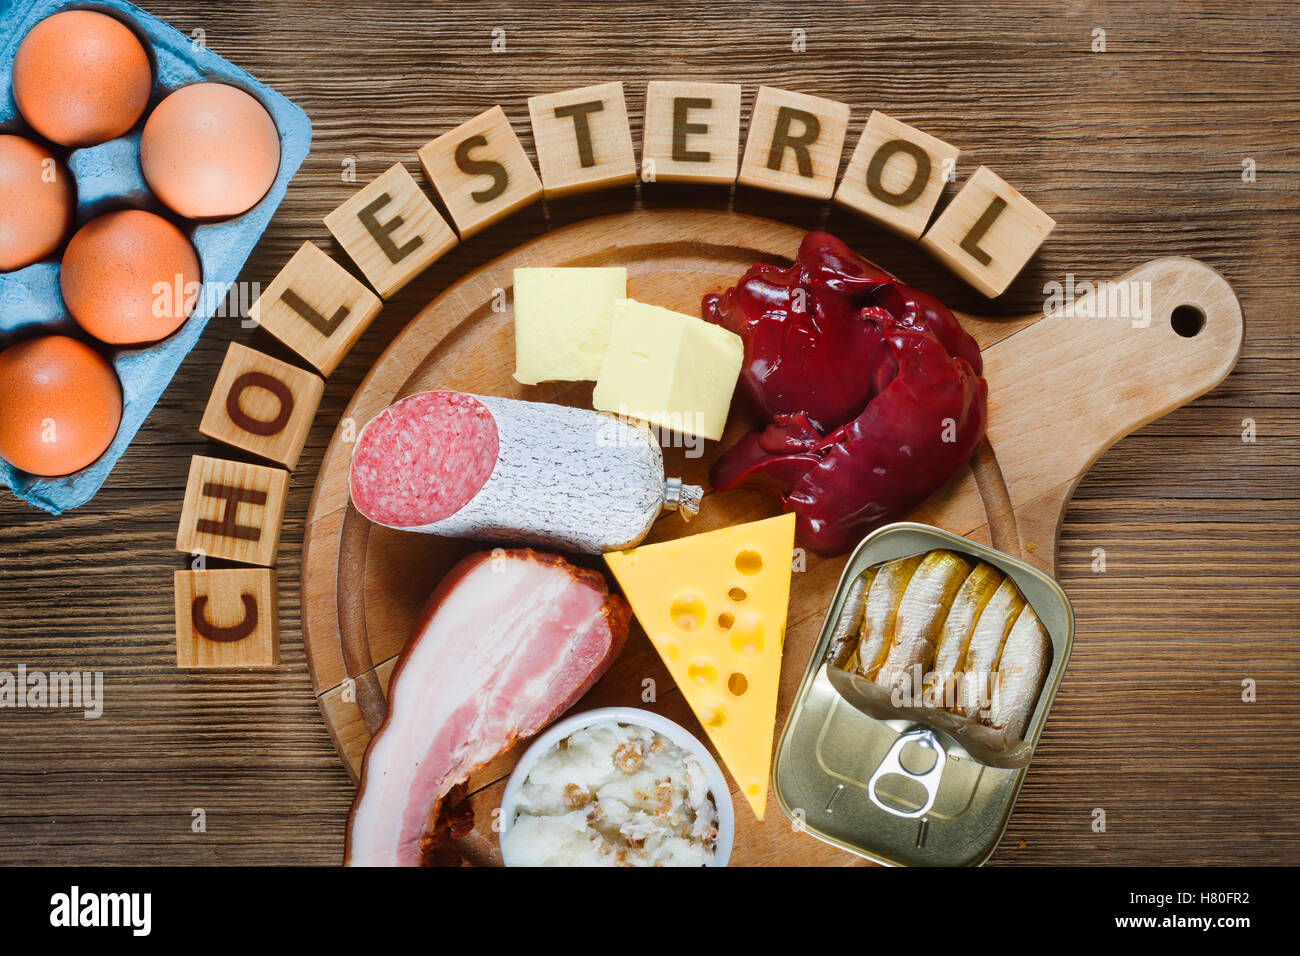 Cholesterinreiche Lebensmittel wie Leber, gelben Käse, Butter, Eiern, Speck, Schmalz mit Zwiebeln, Sardinen in Öl. Holztisch als Zeitmessung Stockfoto